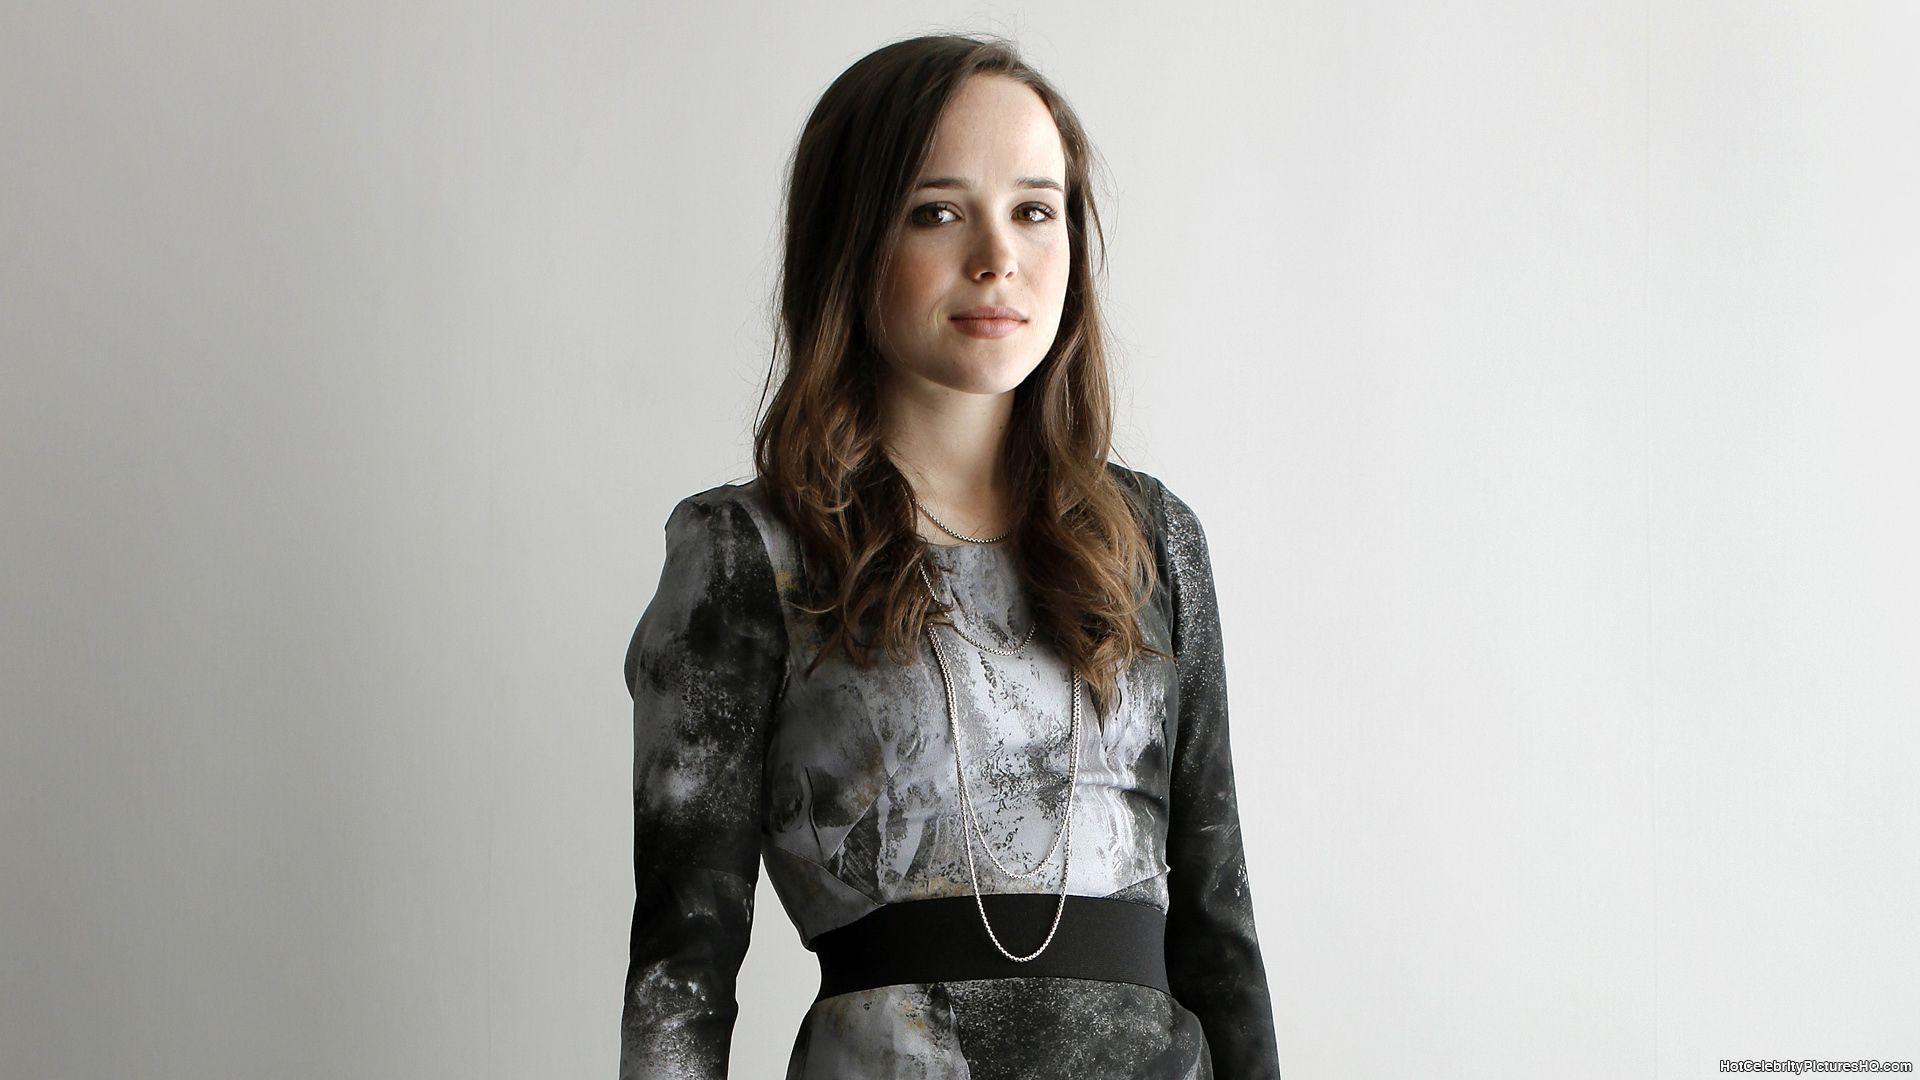 Wallpaper: Ellen Page Wallpaper, Ellen Page Wallpaper HD